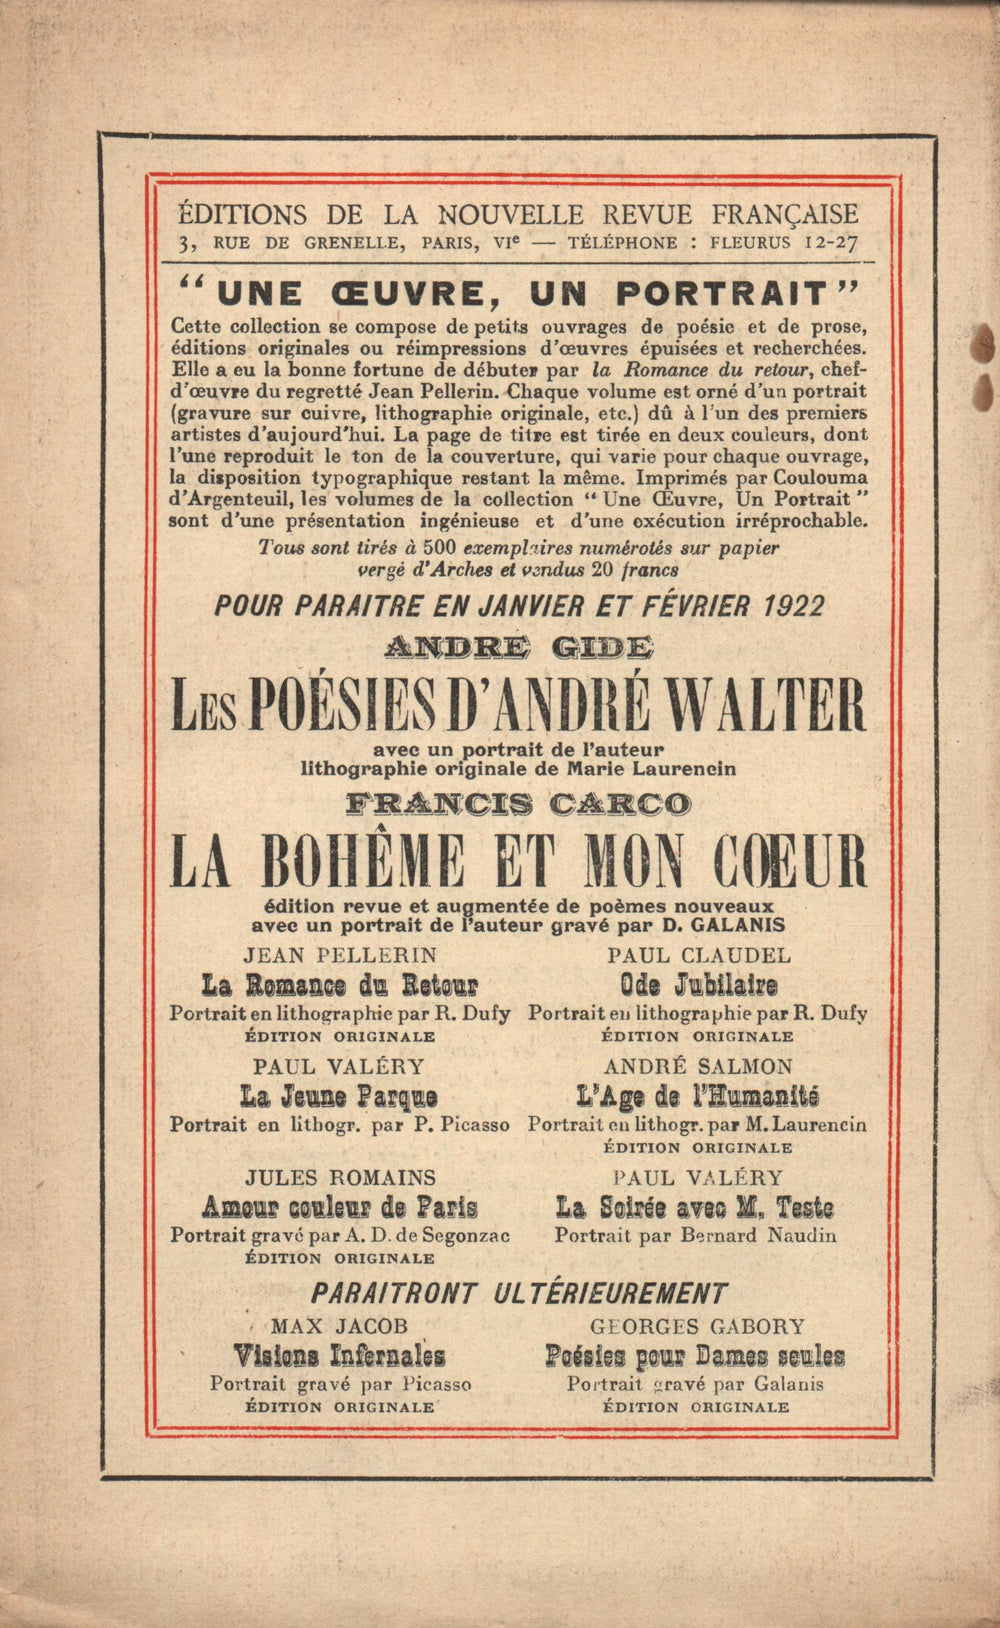 La Nouvelle Revue Française N° 100 (Janvier 1922)